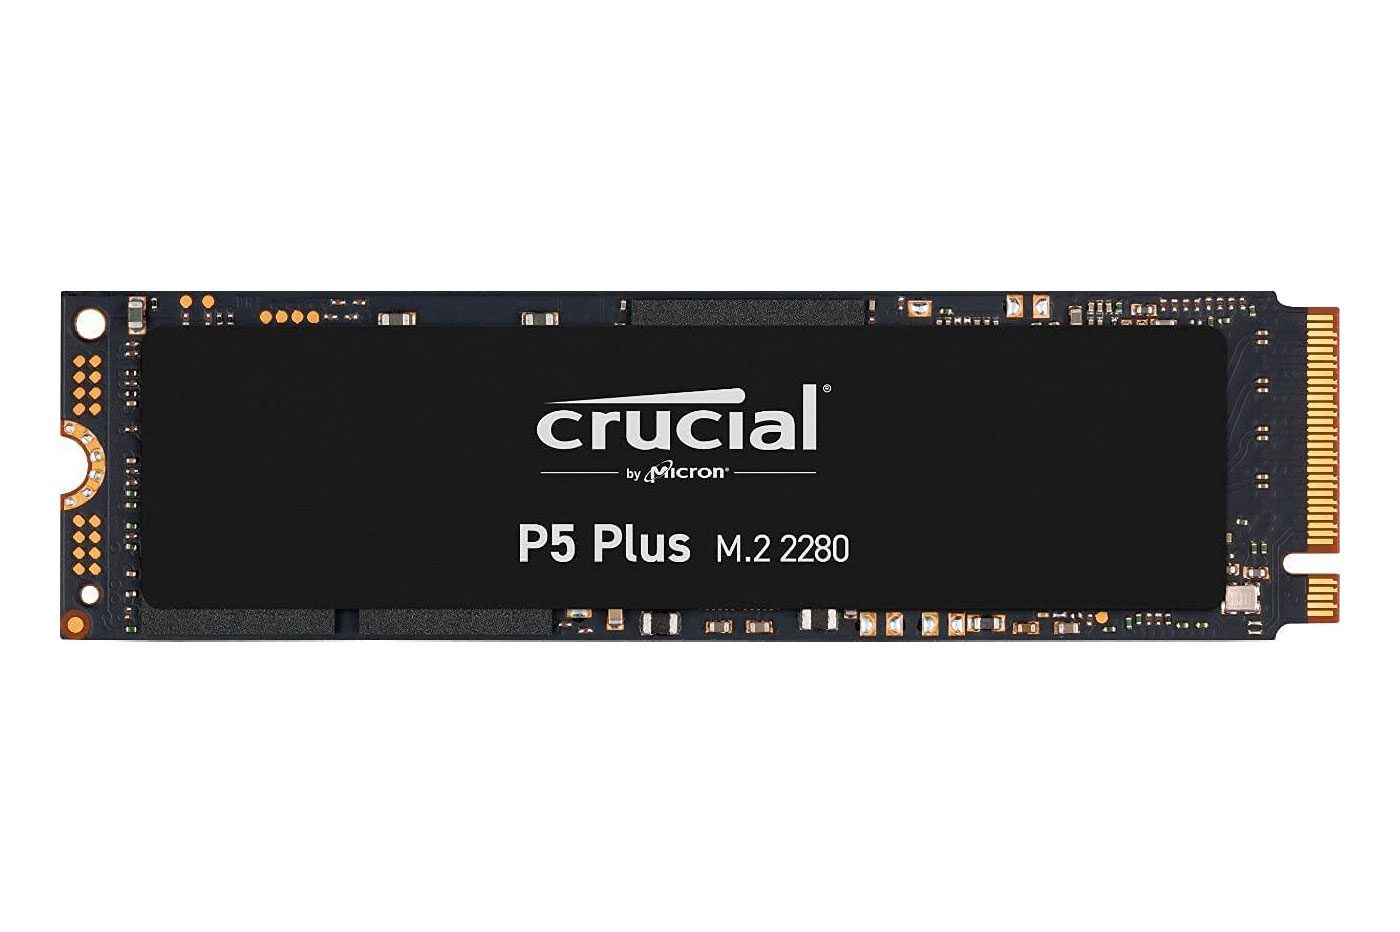 Le SSD Crucial P5 Plus compatible avec la PS5 n'avait jamais été soldé à un  prix si bas